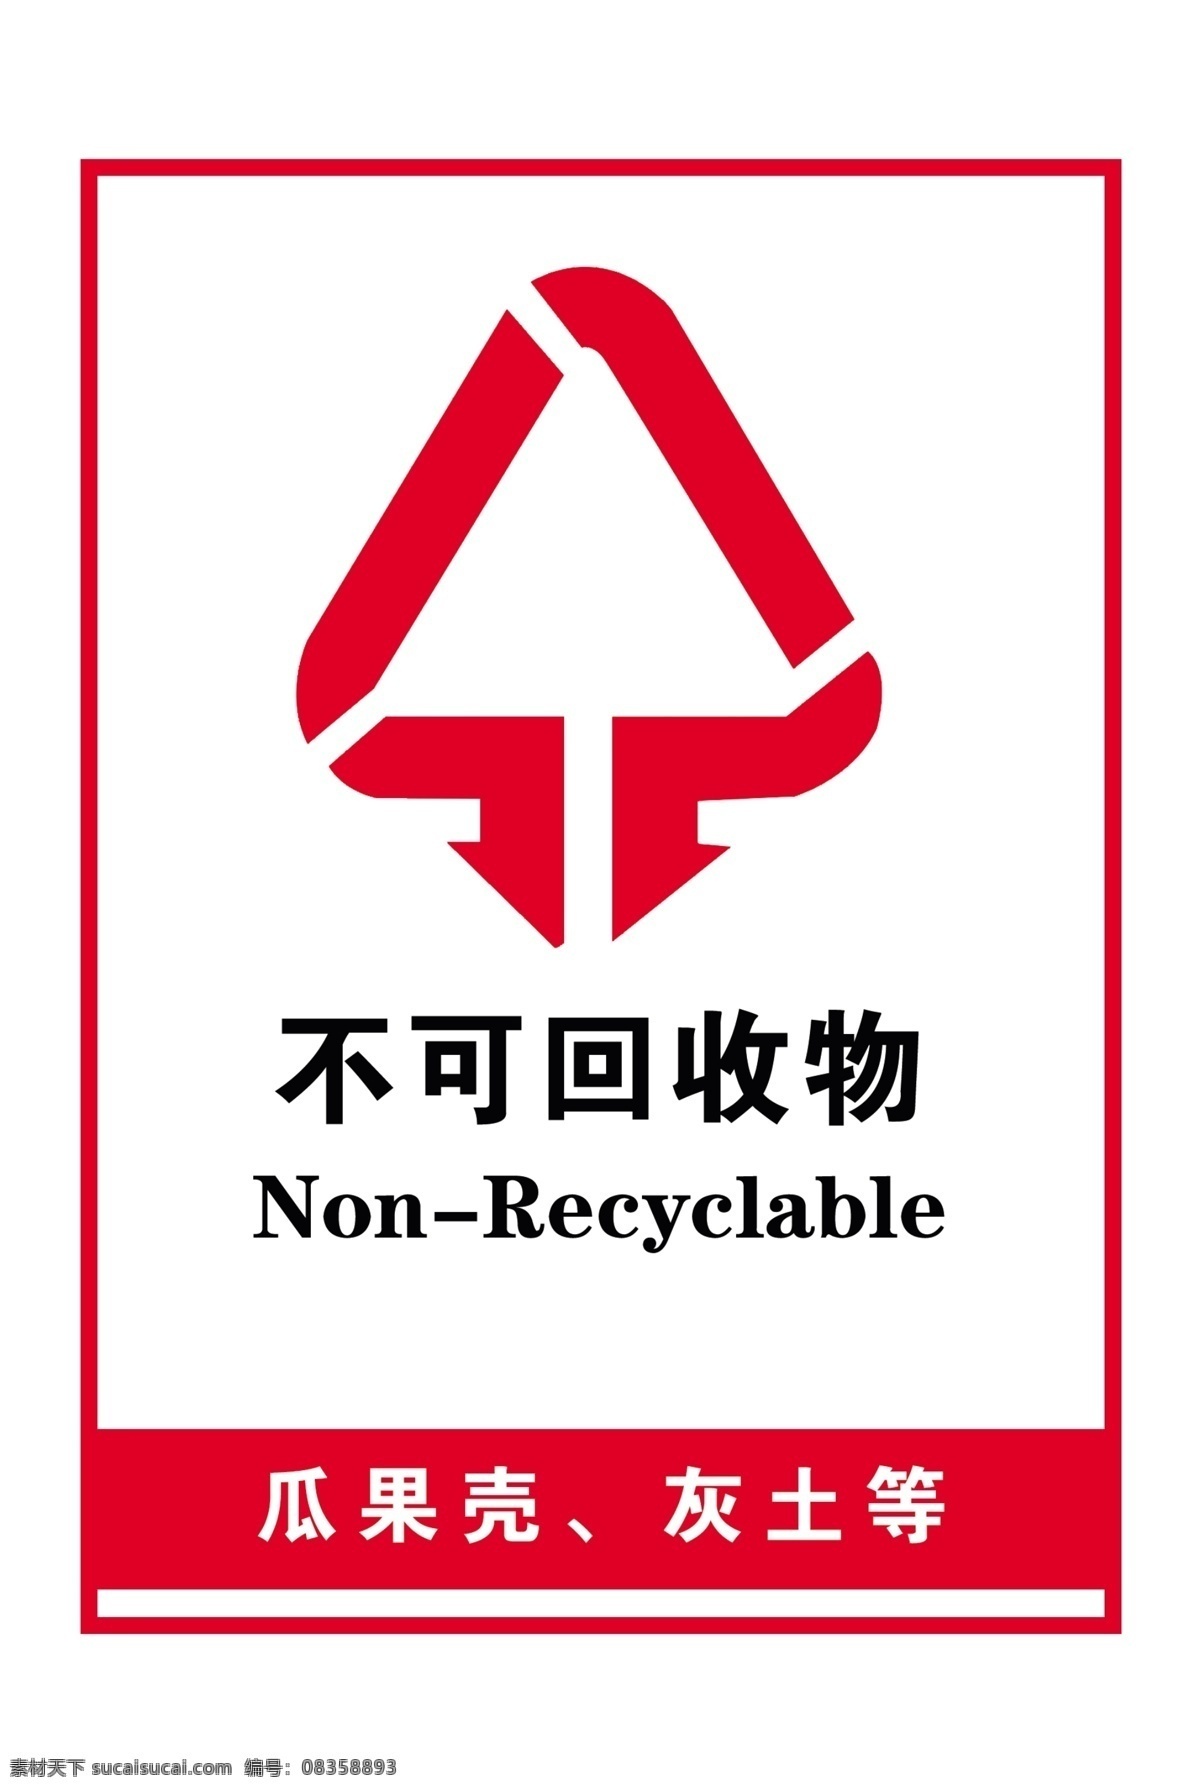 垃圾可回收物 不可 回收 物 标识 牌 可回收物 不可回收物 垃圾 标志 矢量图 锦瑟 牌匾 标牌 类 分层